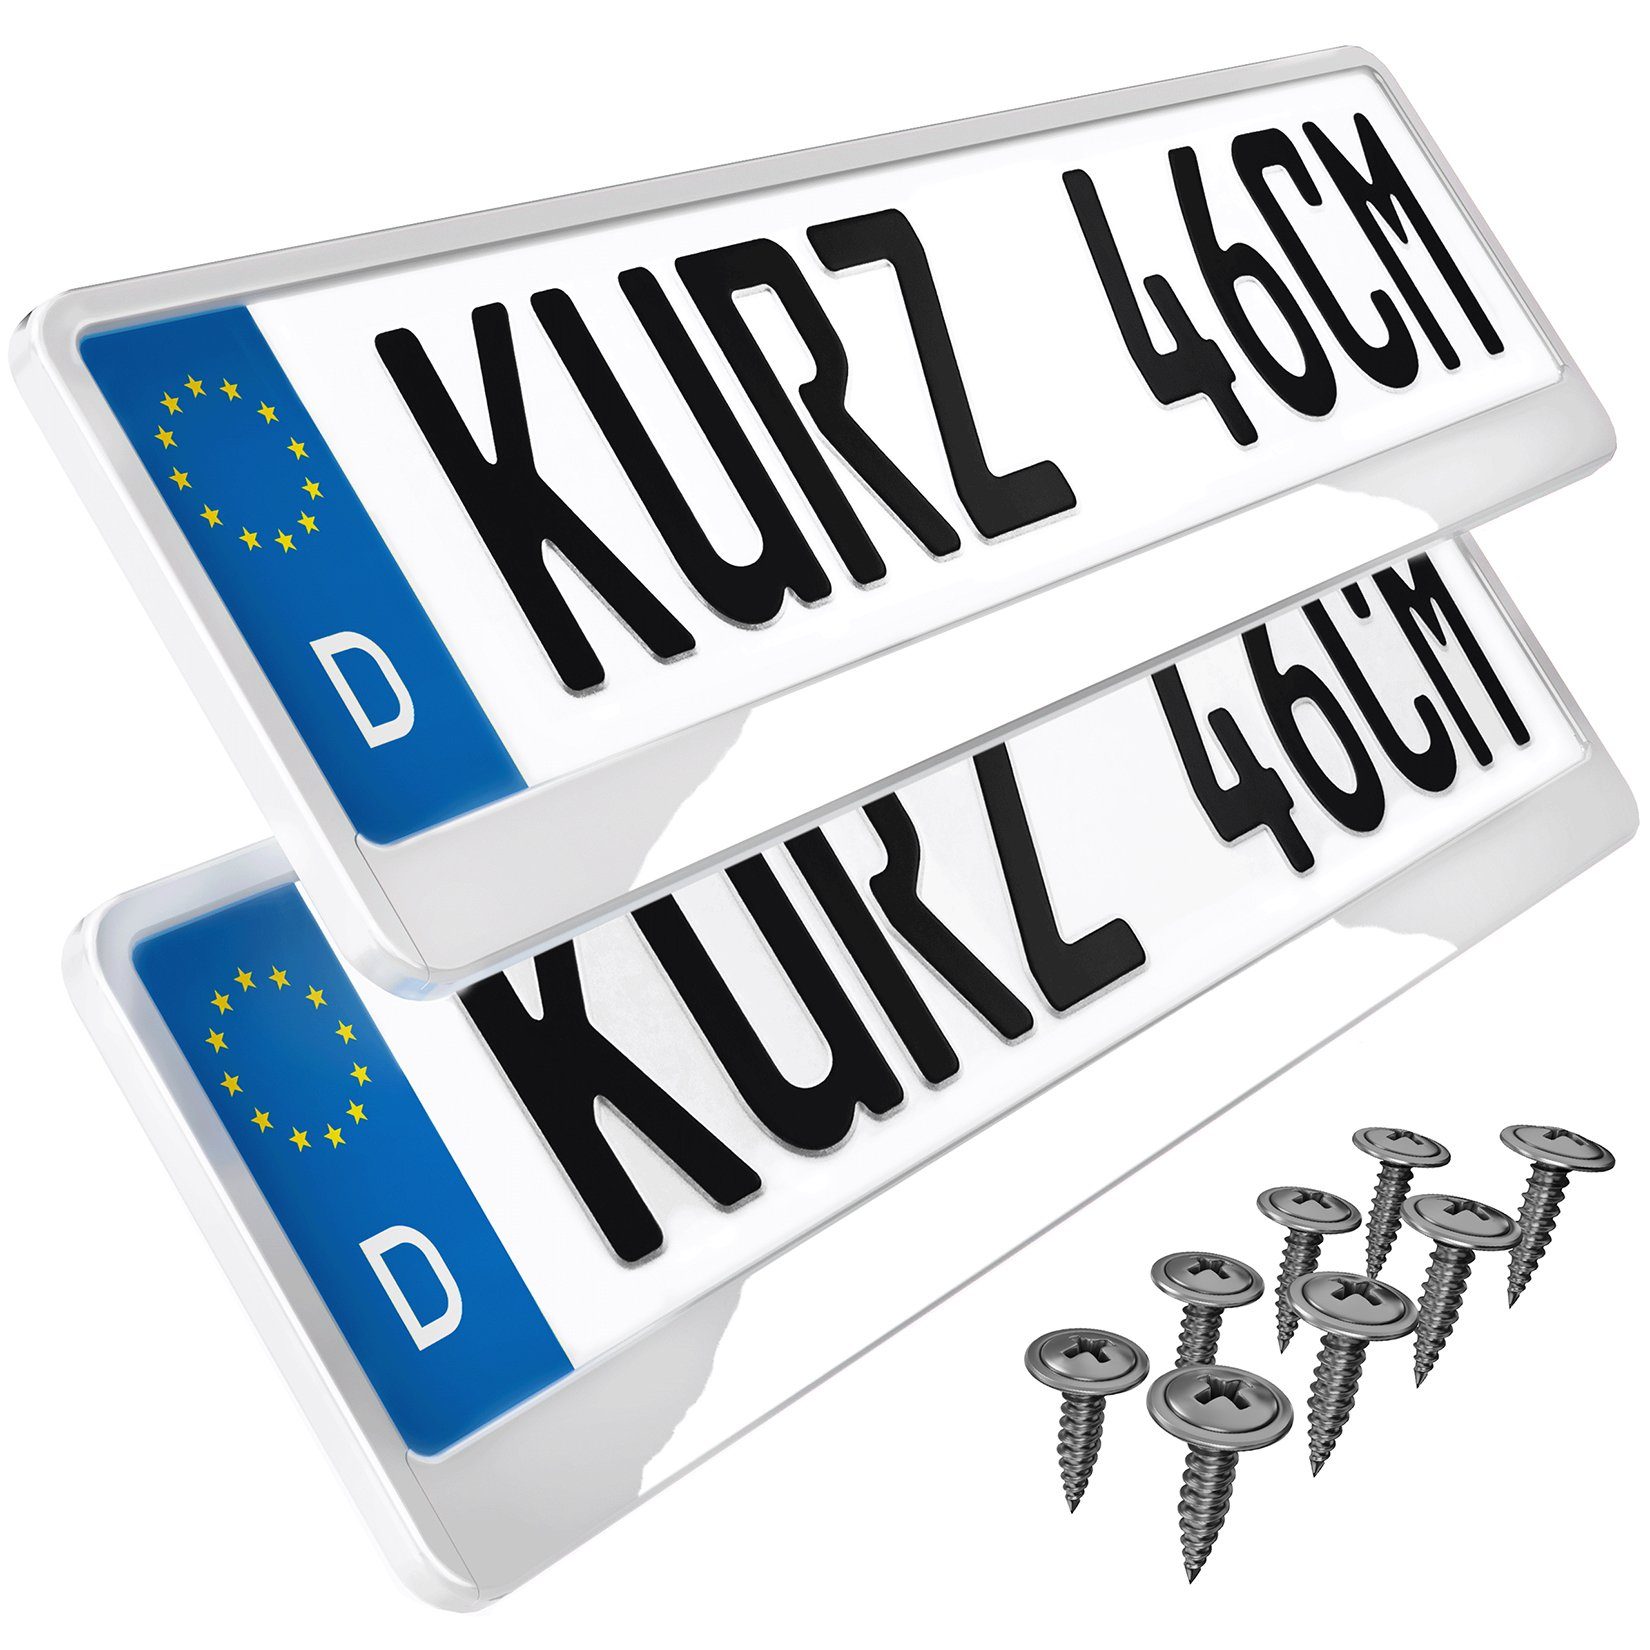 L & P Car Design Kennzeichenhalter für Auto 46 cm in Weiß Hochglanz für kurze Kennzeichen, (2 Stück)